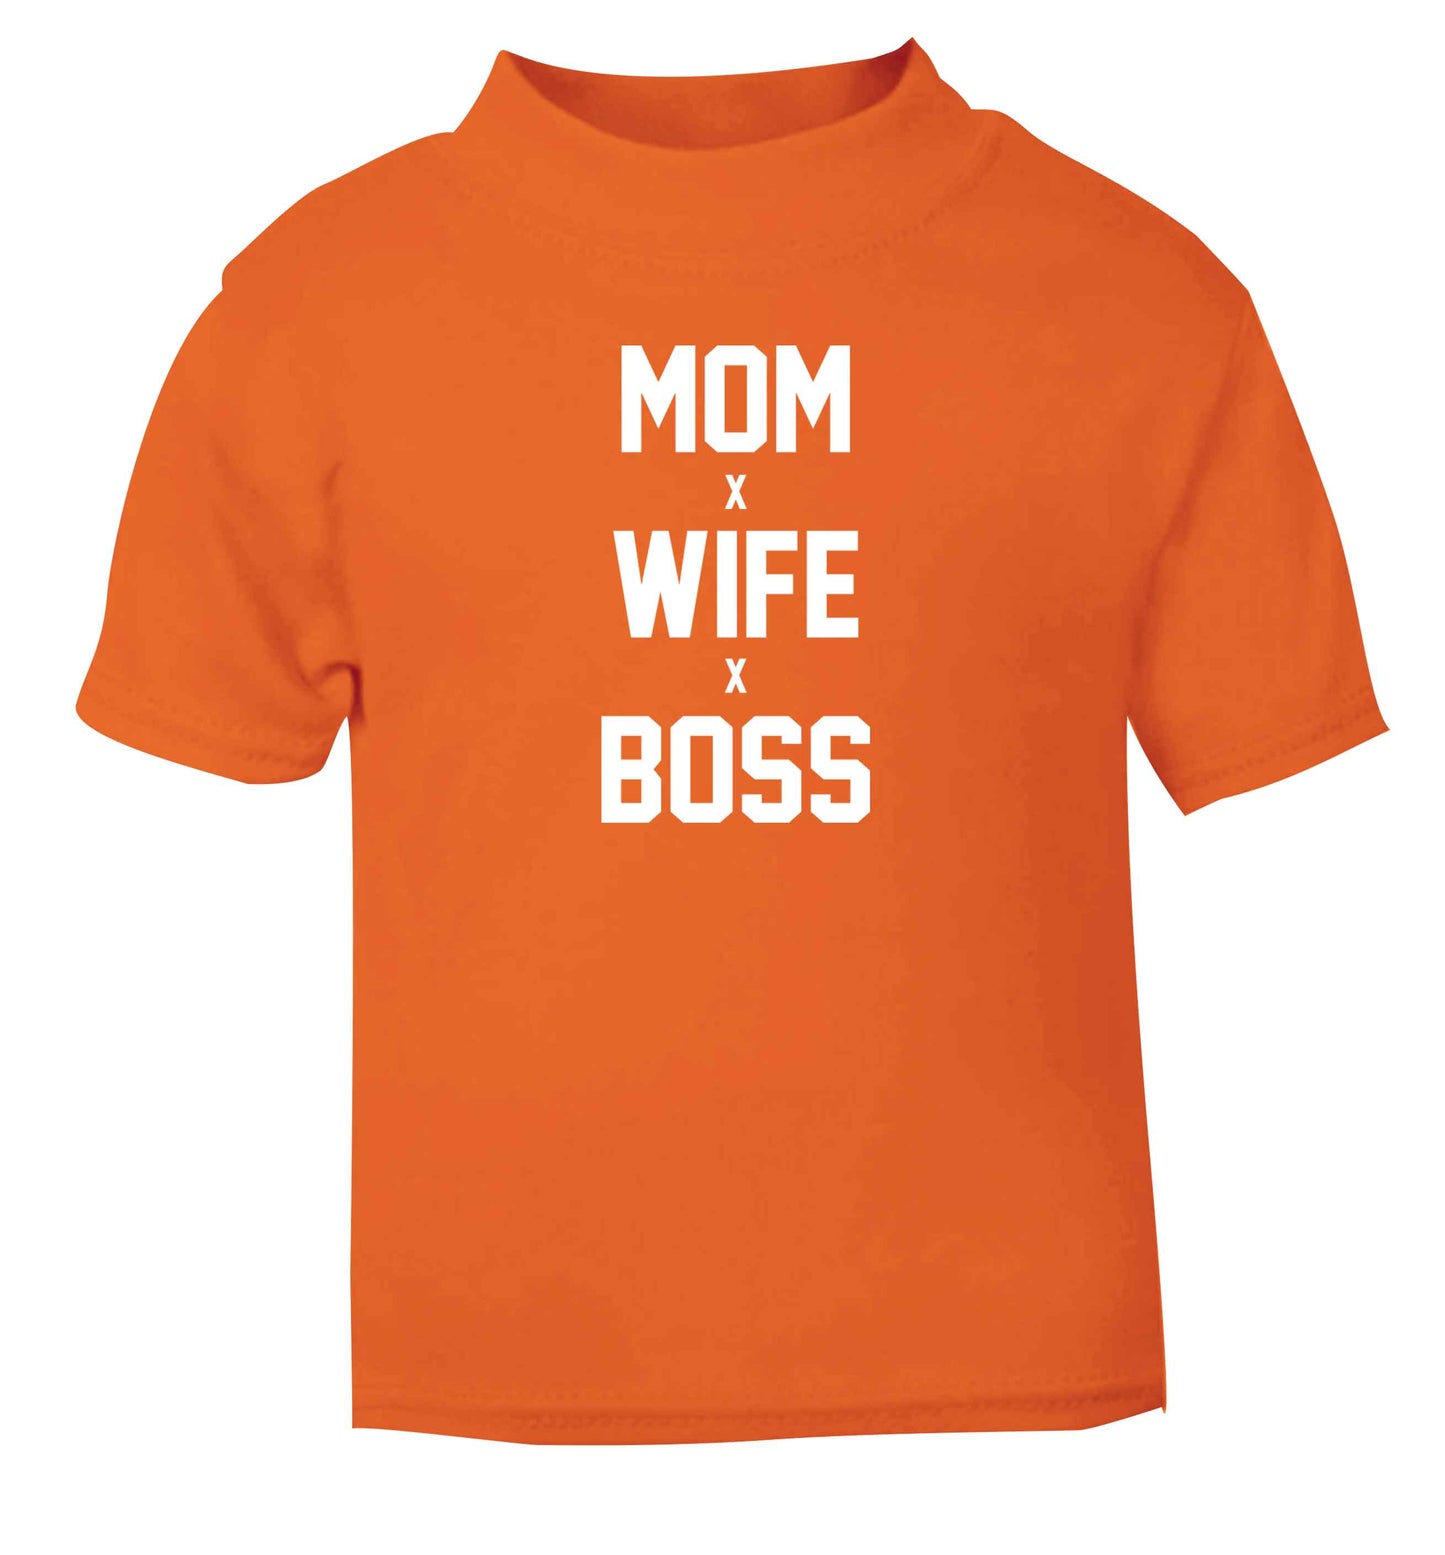 Mum wife boss orange baby toddler Tshirt 2 Years